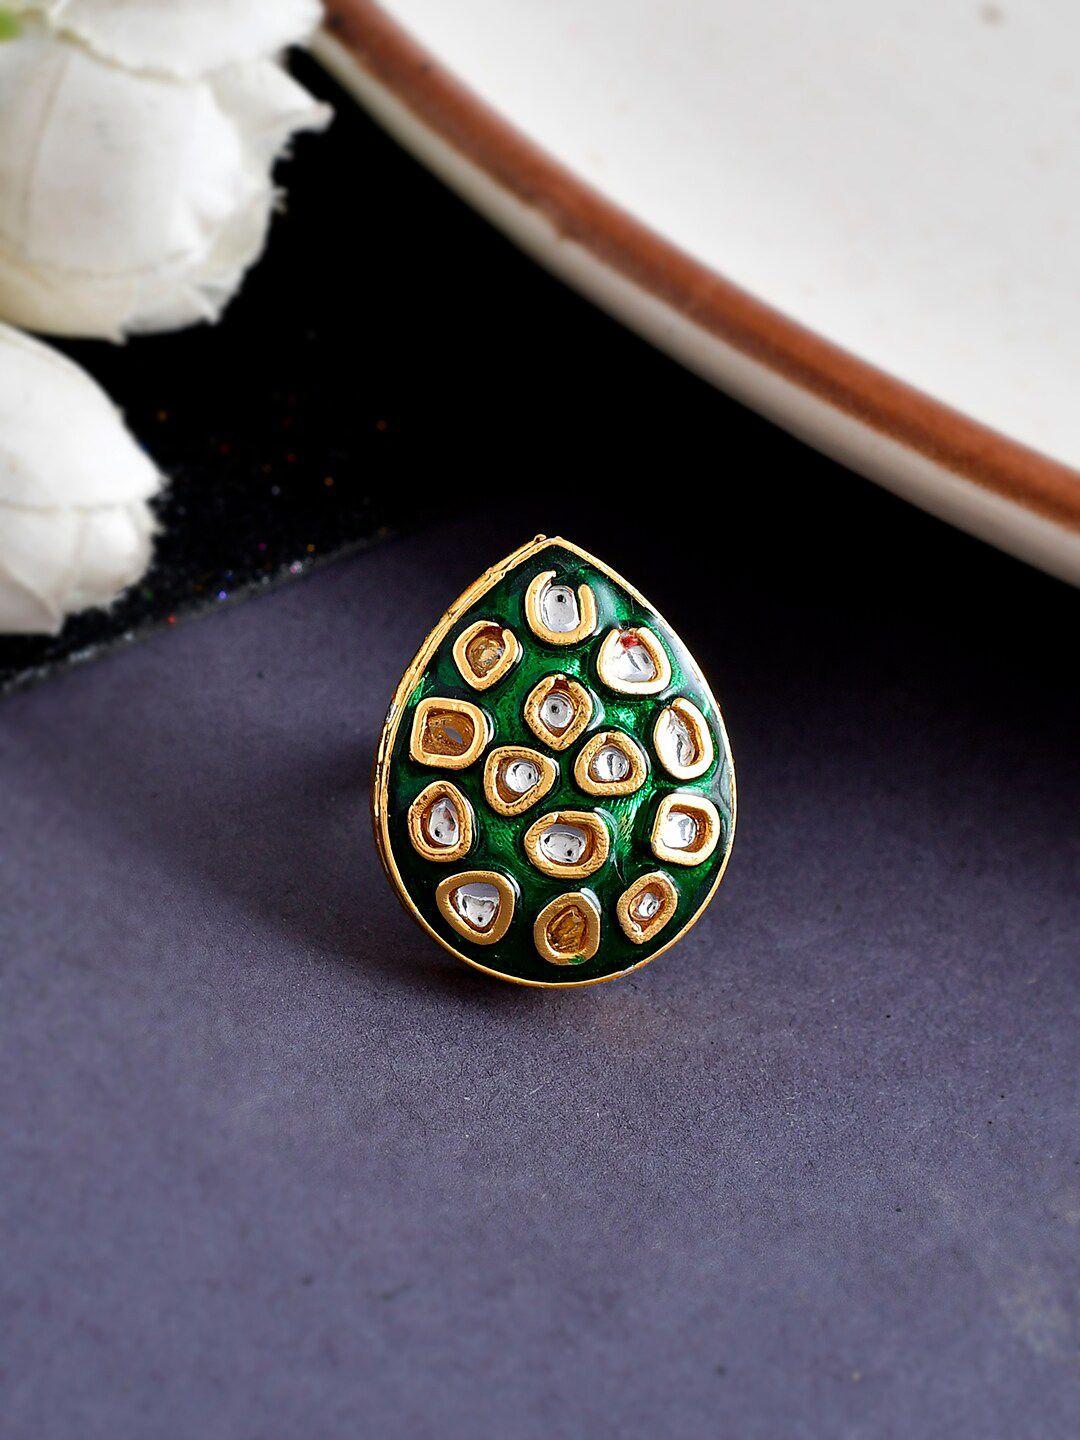 shoshaa-gold-plated-kundan-stone-studded-&-enameled-adjustable-finger-ring